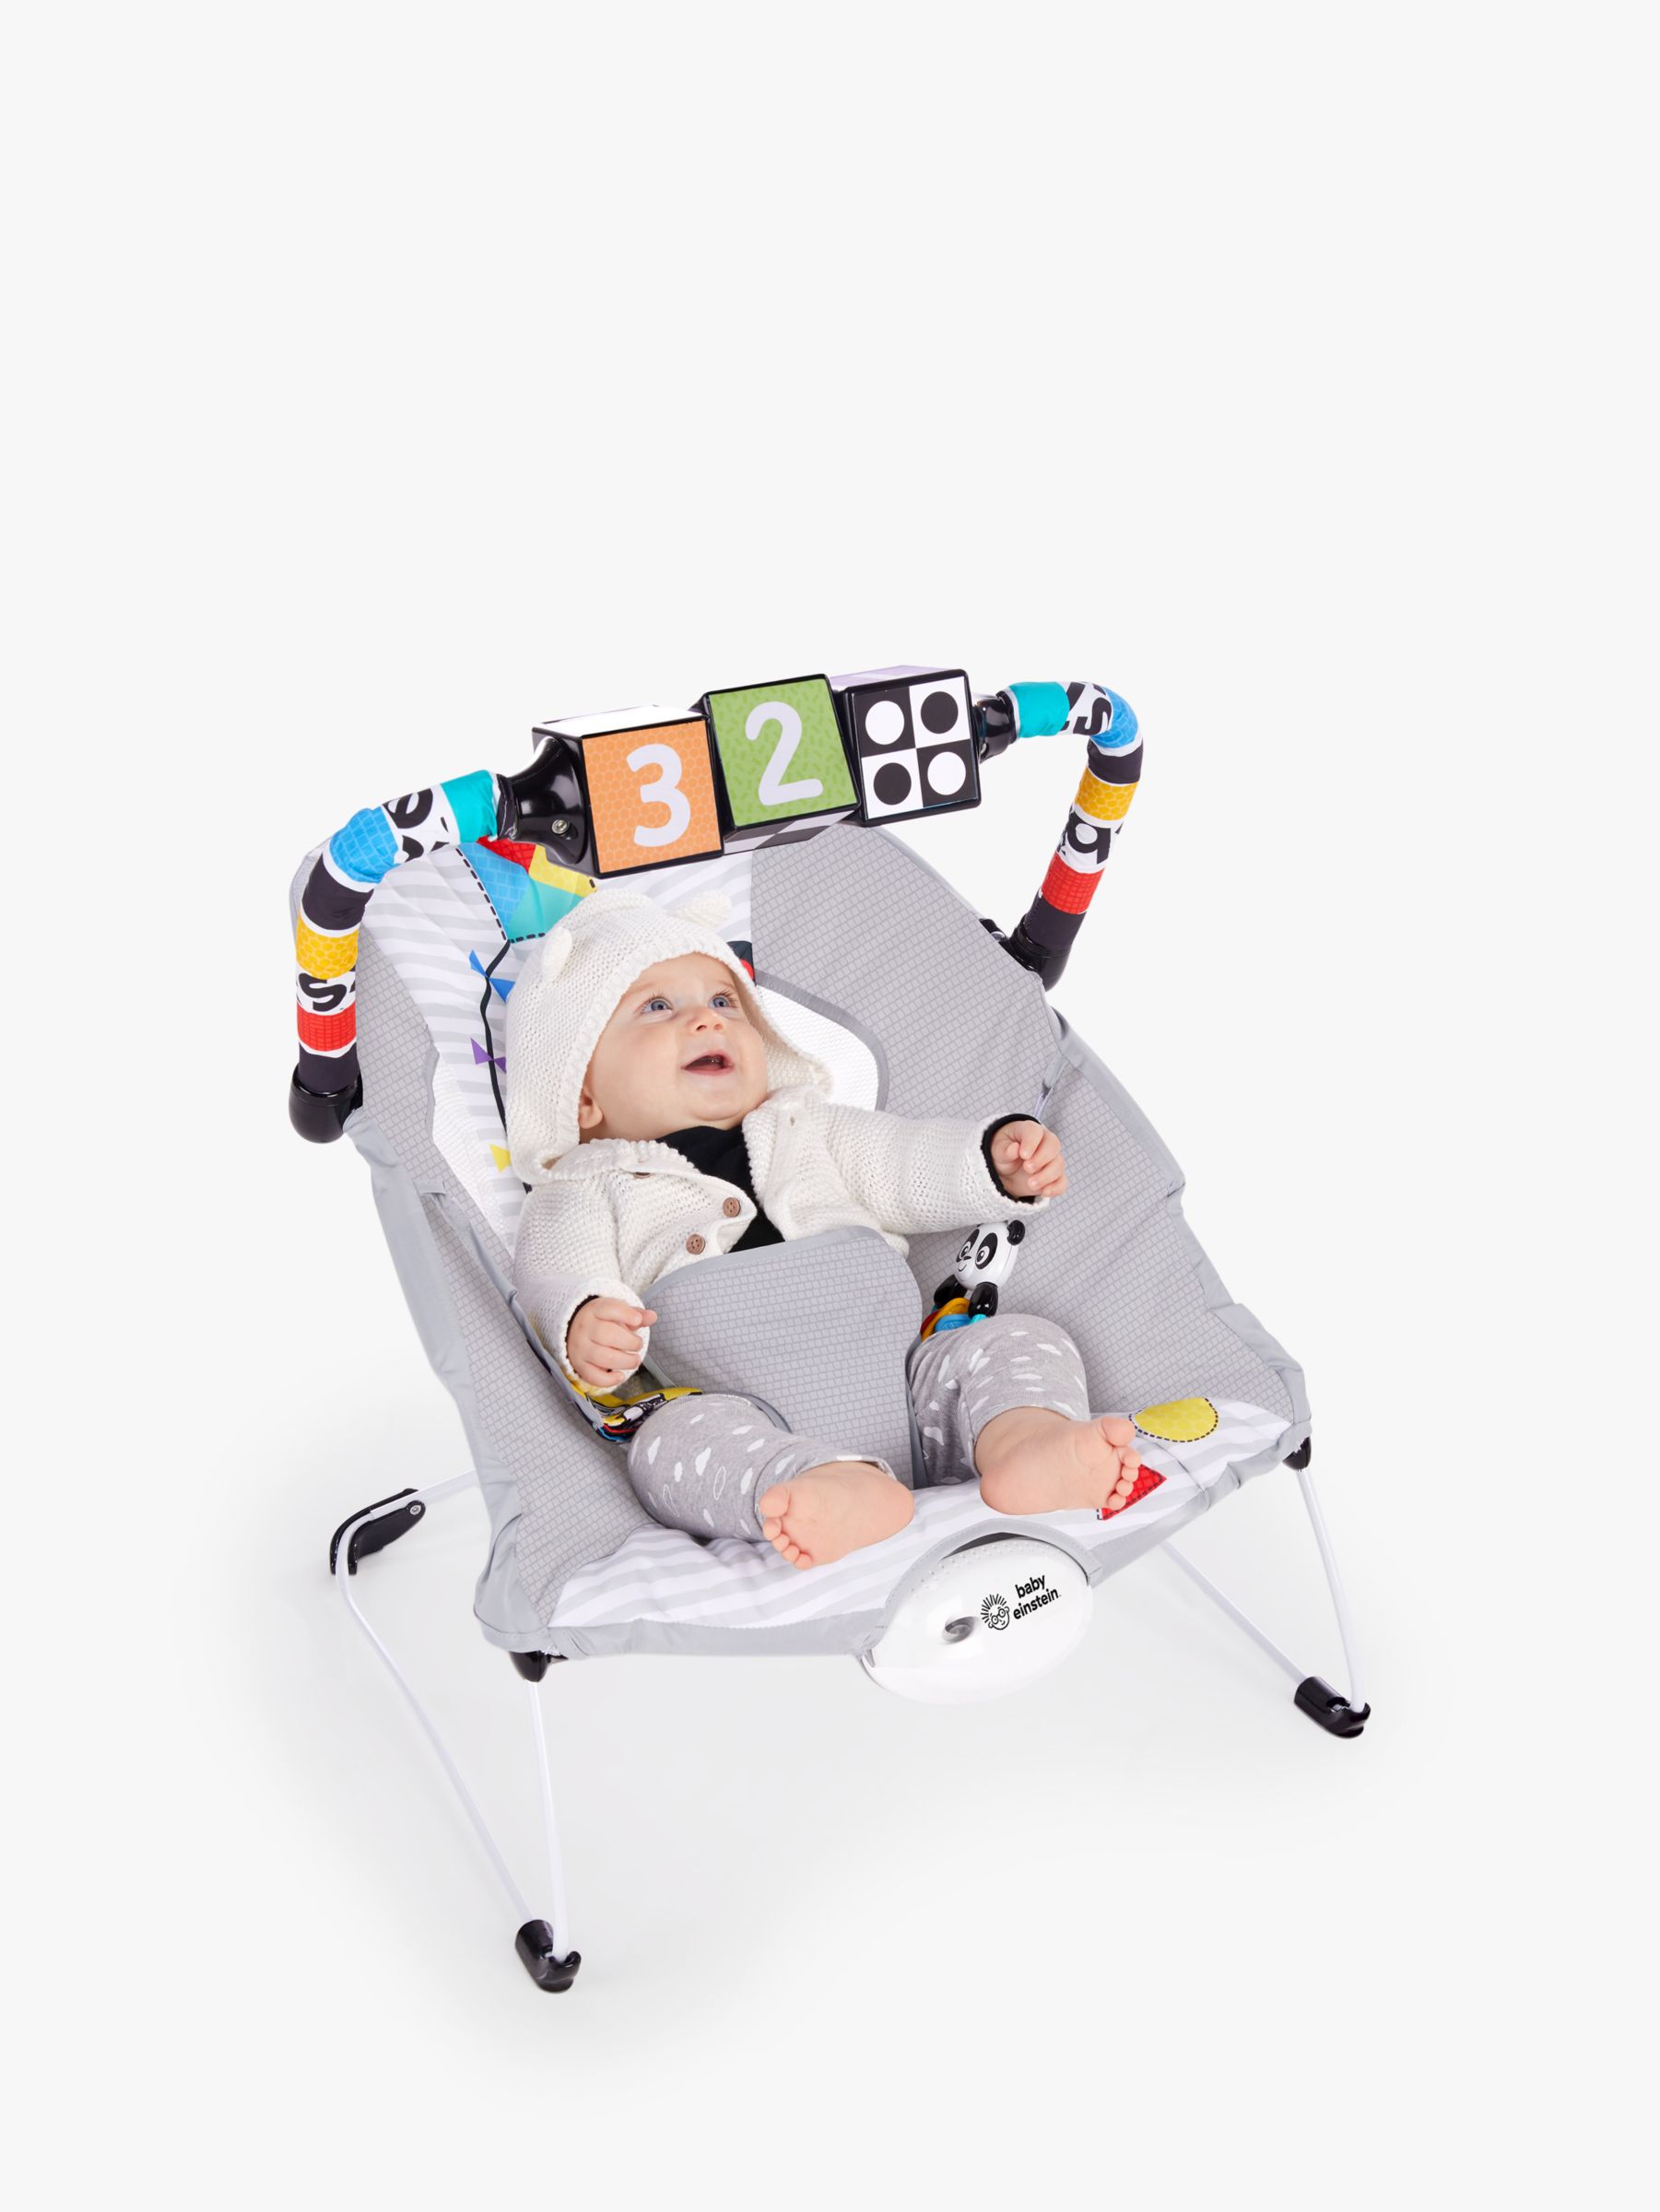 baby einstein bouncer chair